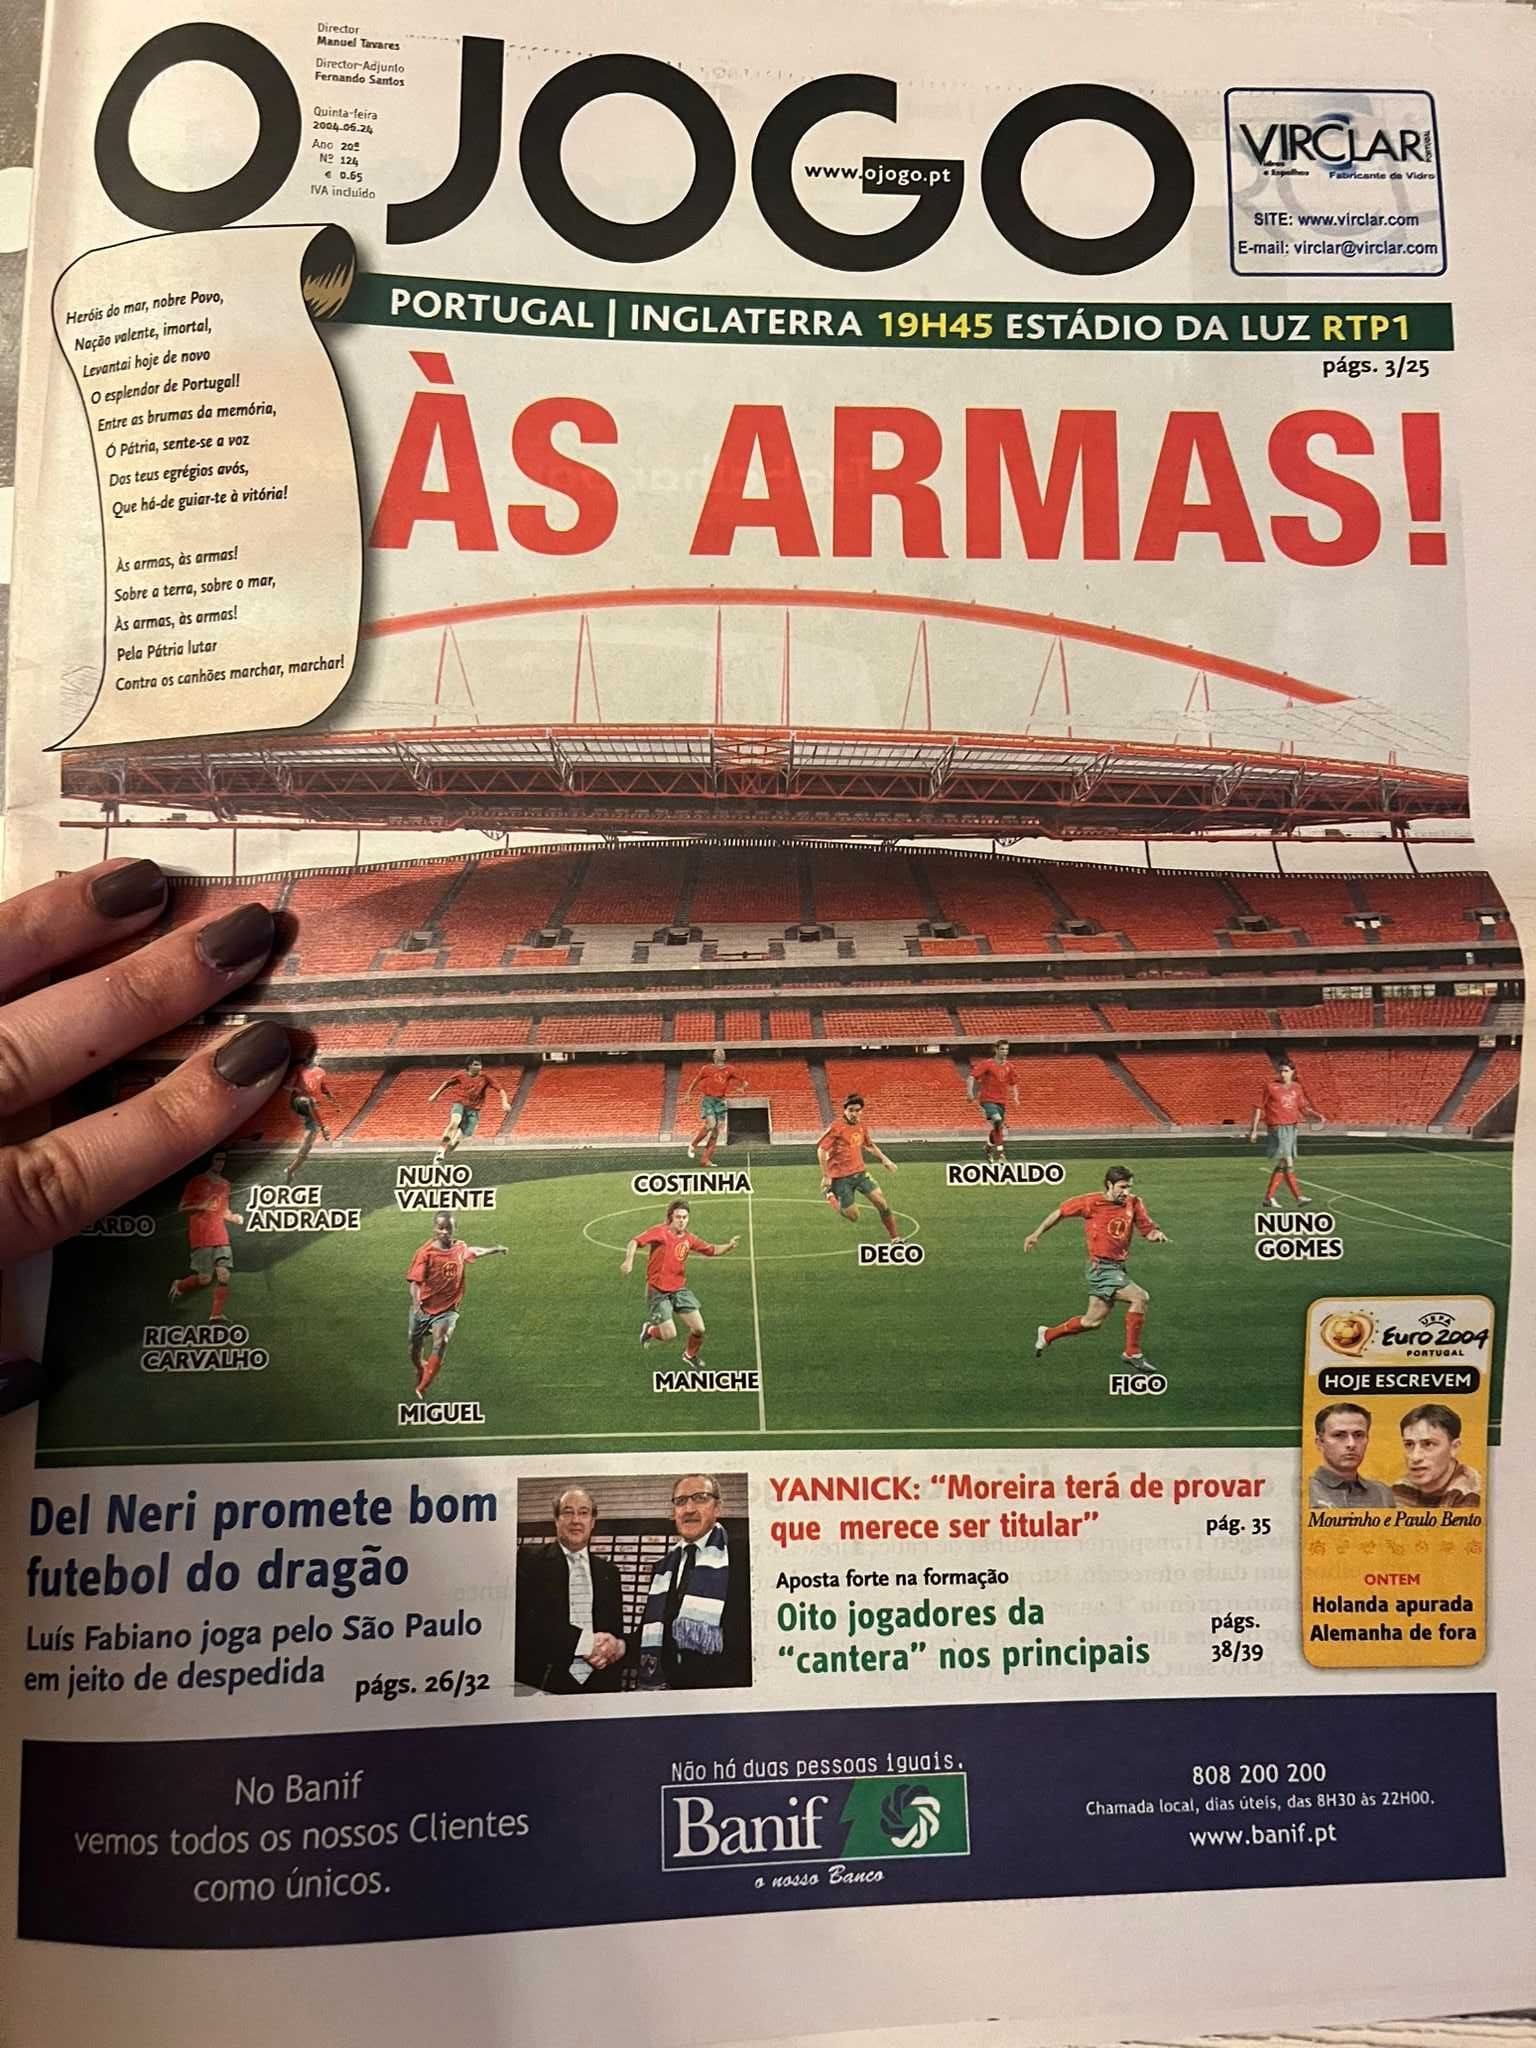 EURO 2004 - Jornais Portugal! Completo